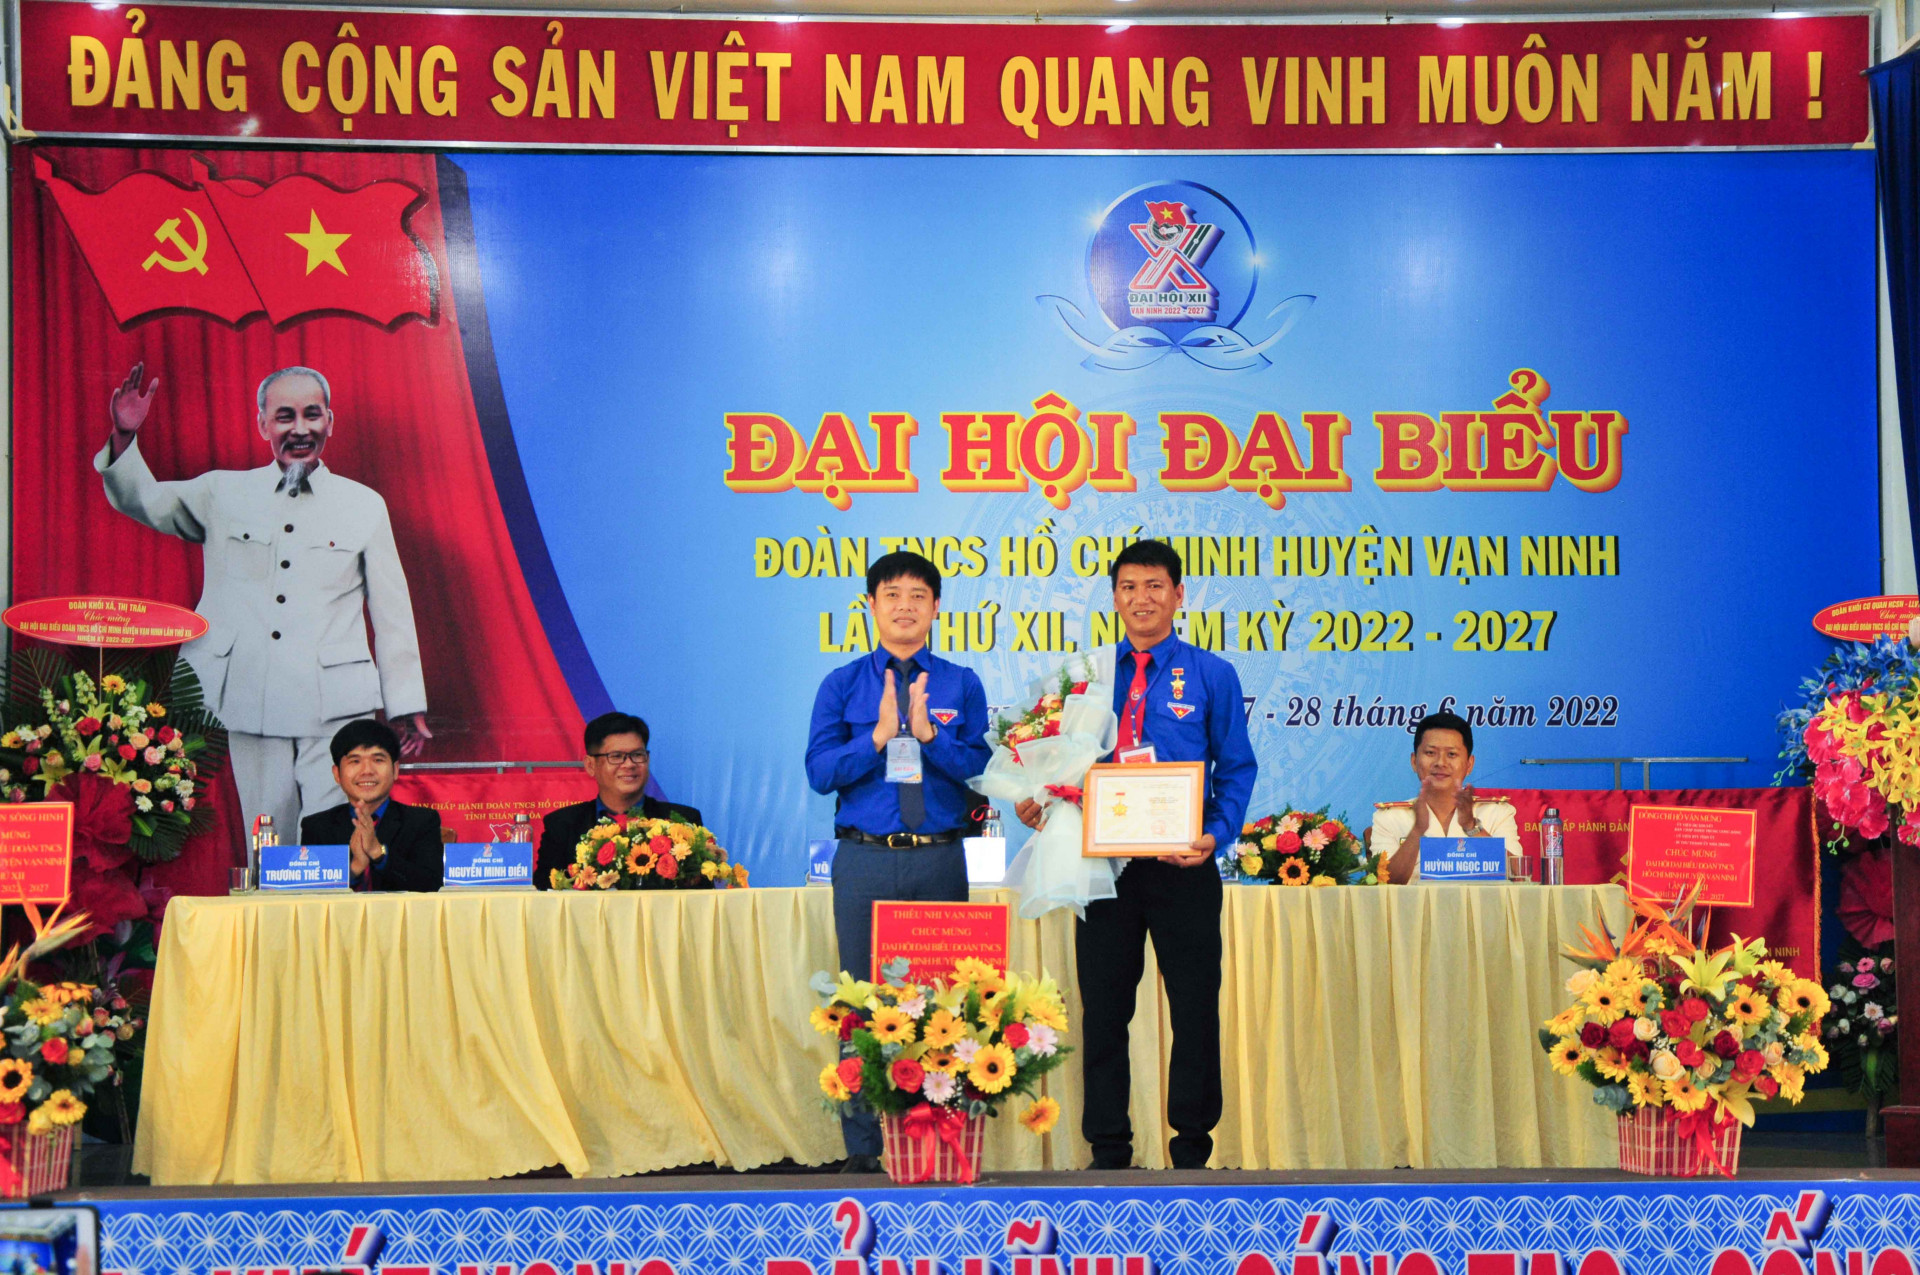 Lãnh đạo Tỉnh đoàn thừa uỷ quyền của Trung ương Đoàn trao kỷ niệm chương Vì thế hệ trẻ cho một cá nhân của huyện Vạn Ninh